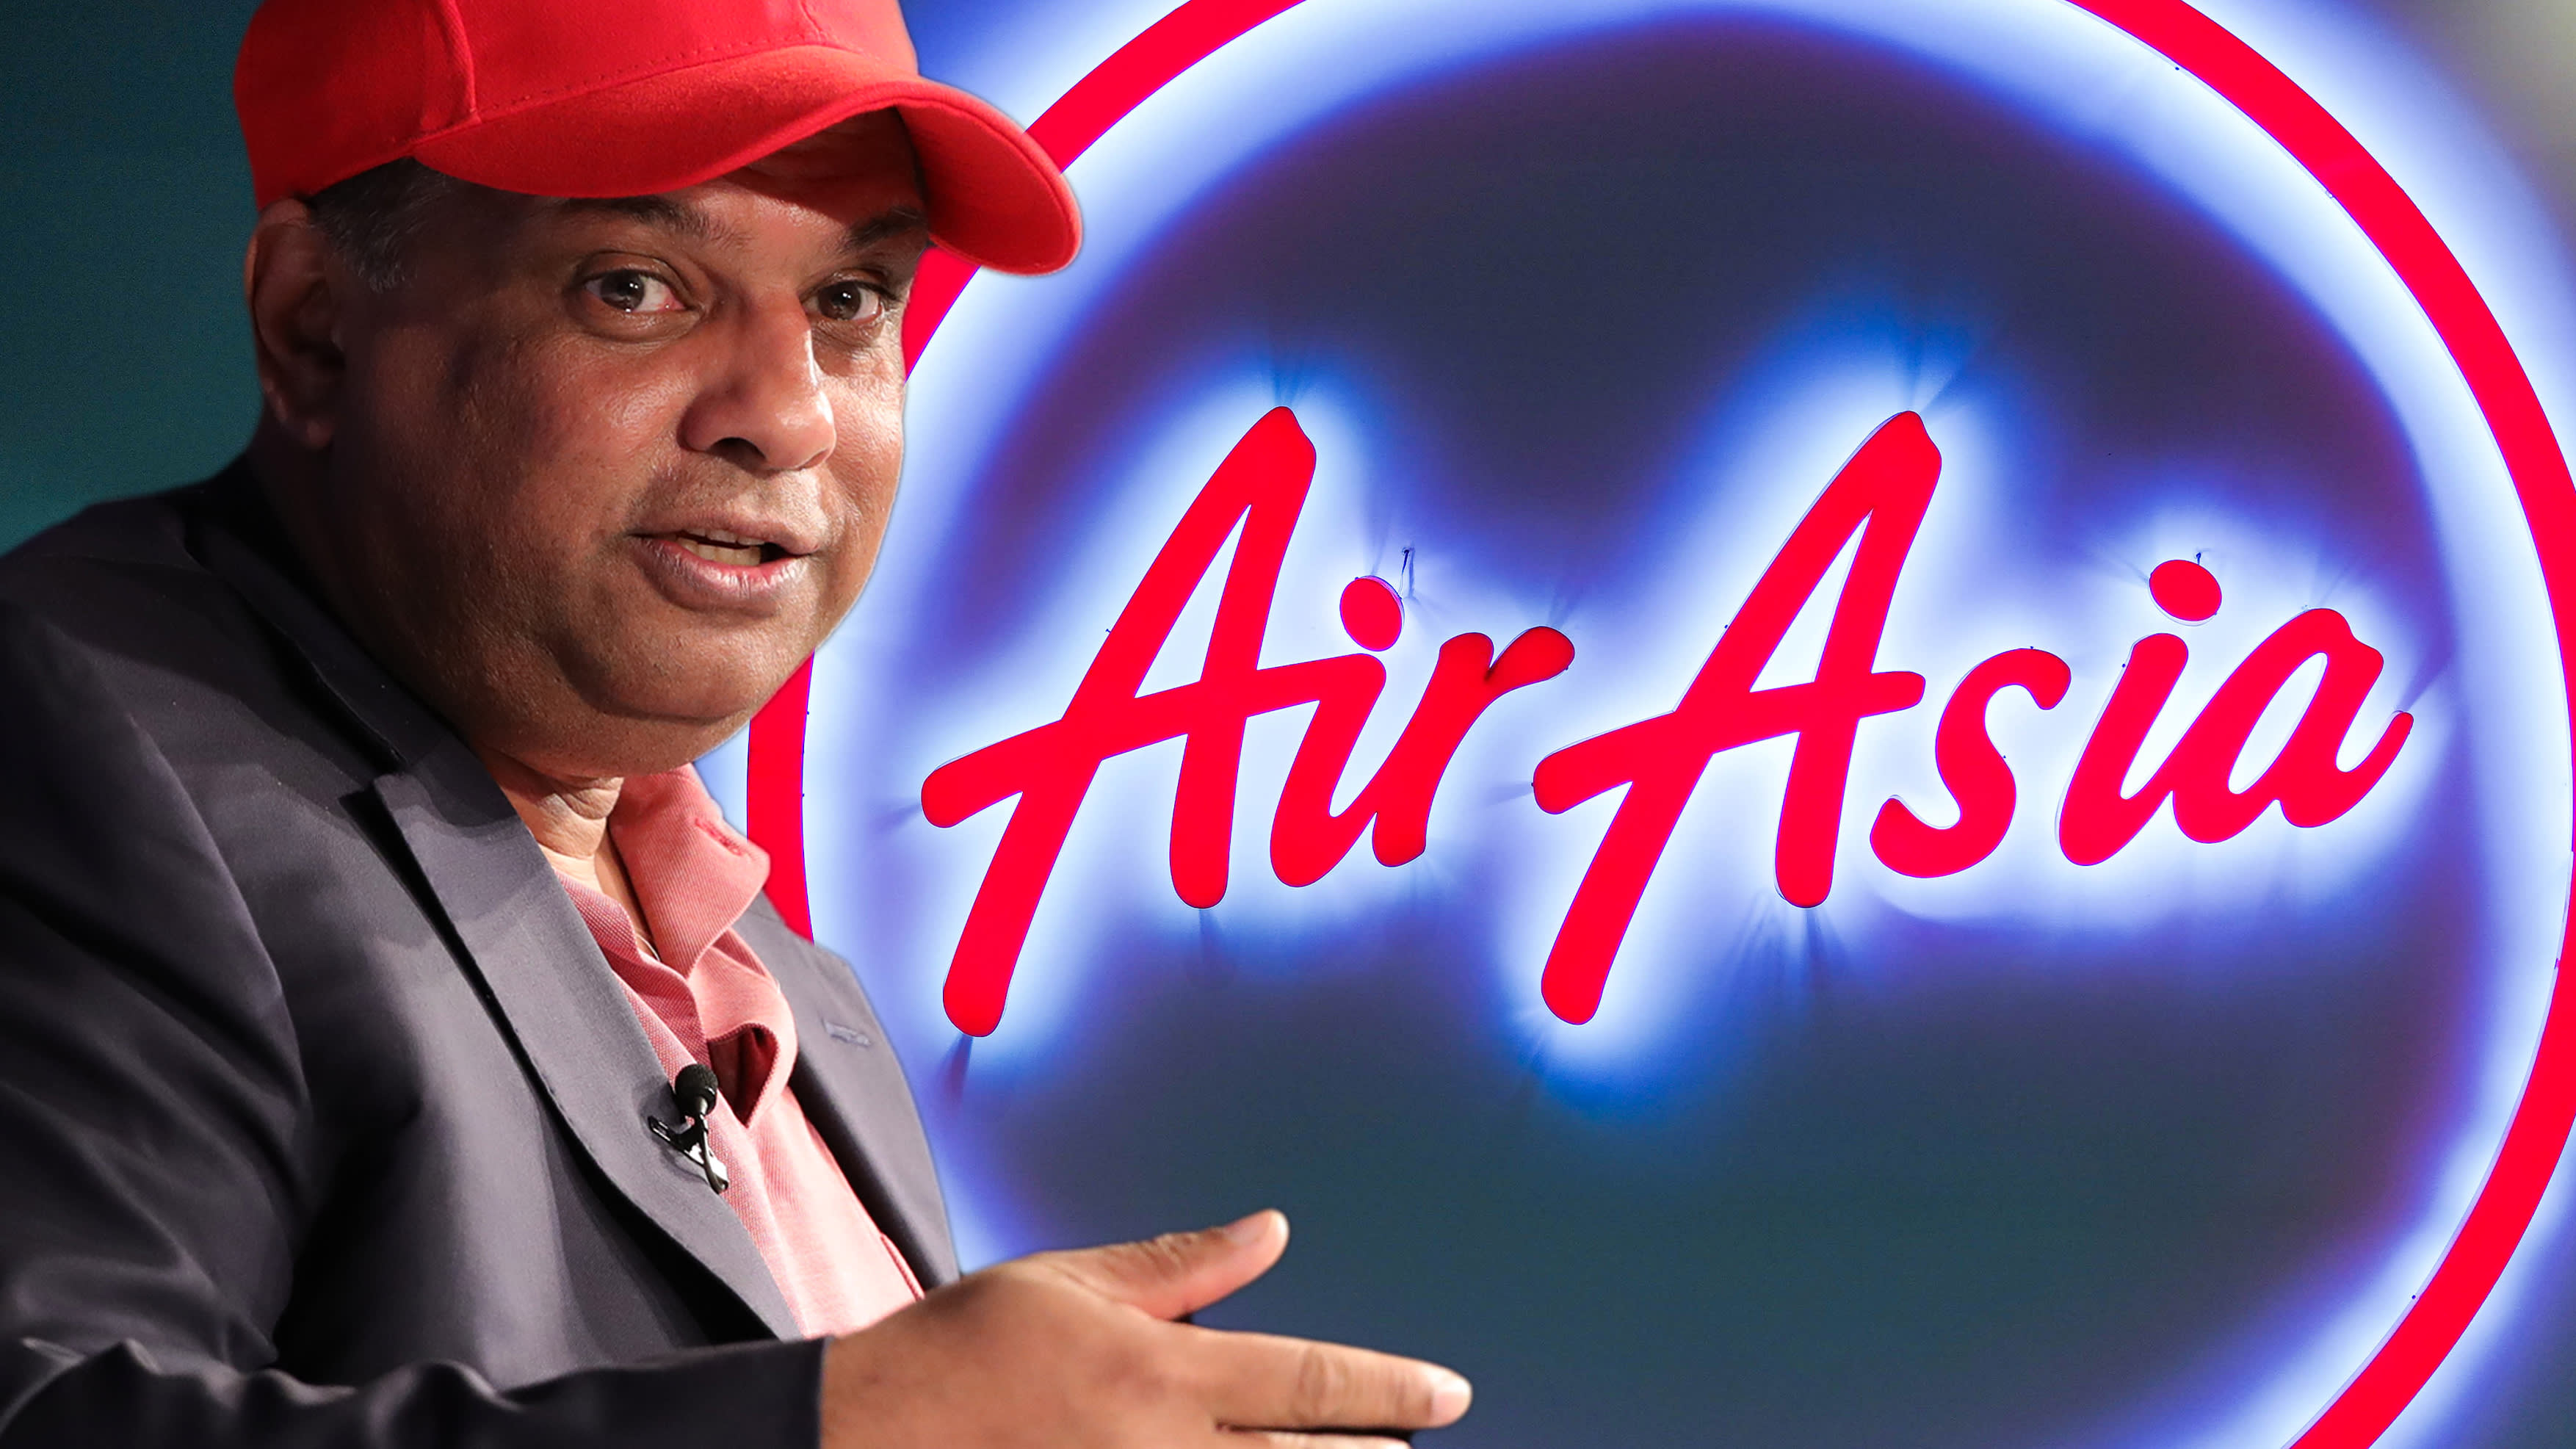 AirAsia ชี้อาเซียนควรเปิดพรมแดนก่อนพนักงานบริษัทถูกเลิกจ้างเพิ่มอีก